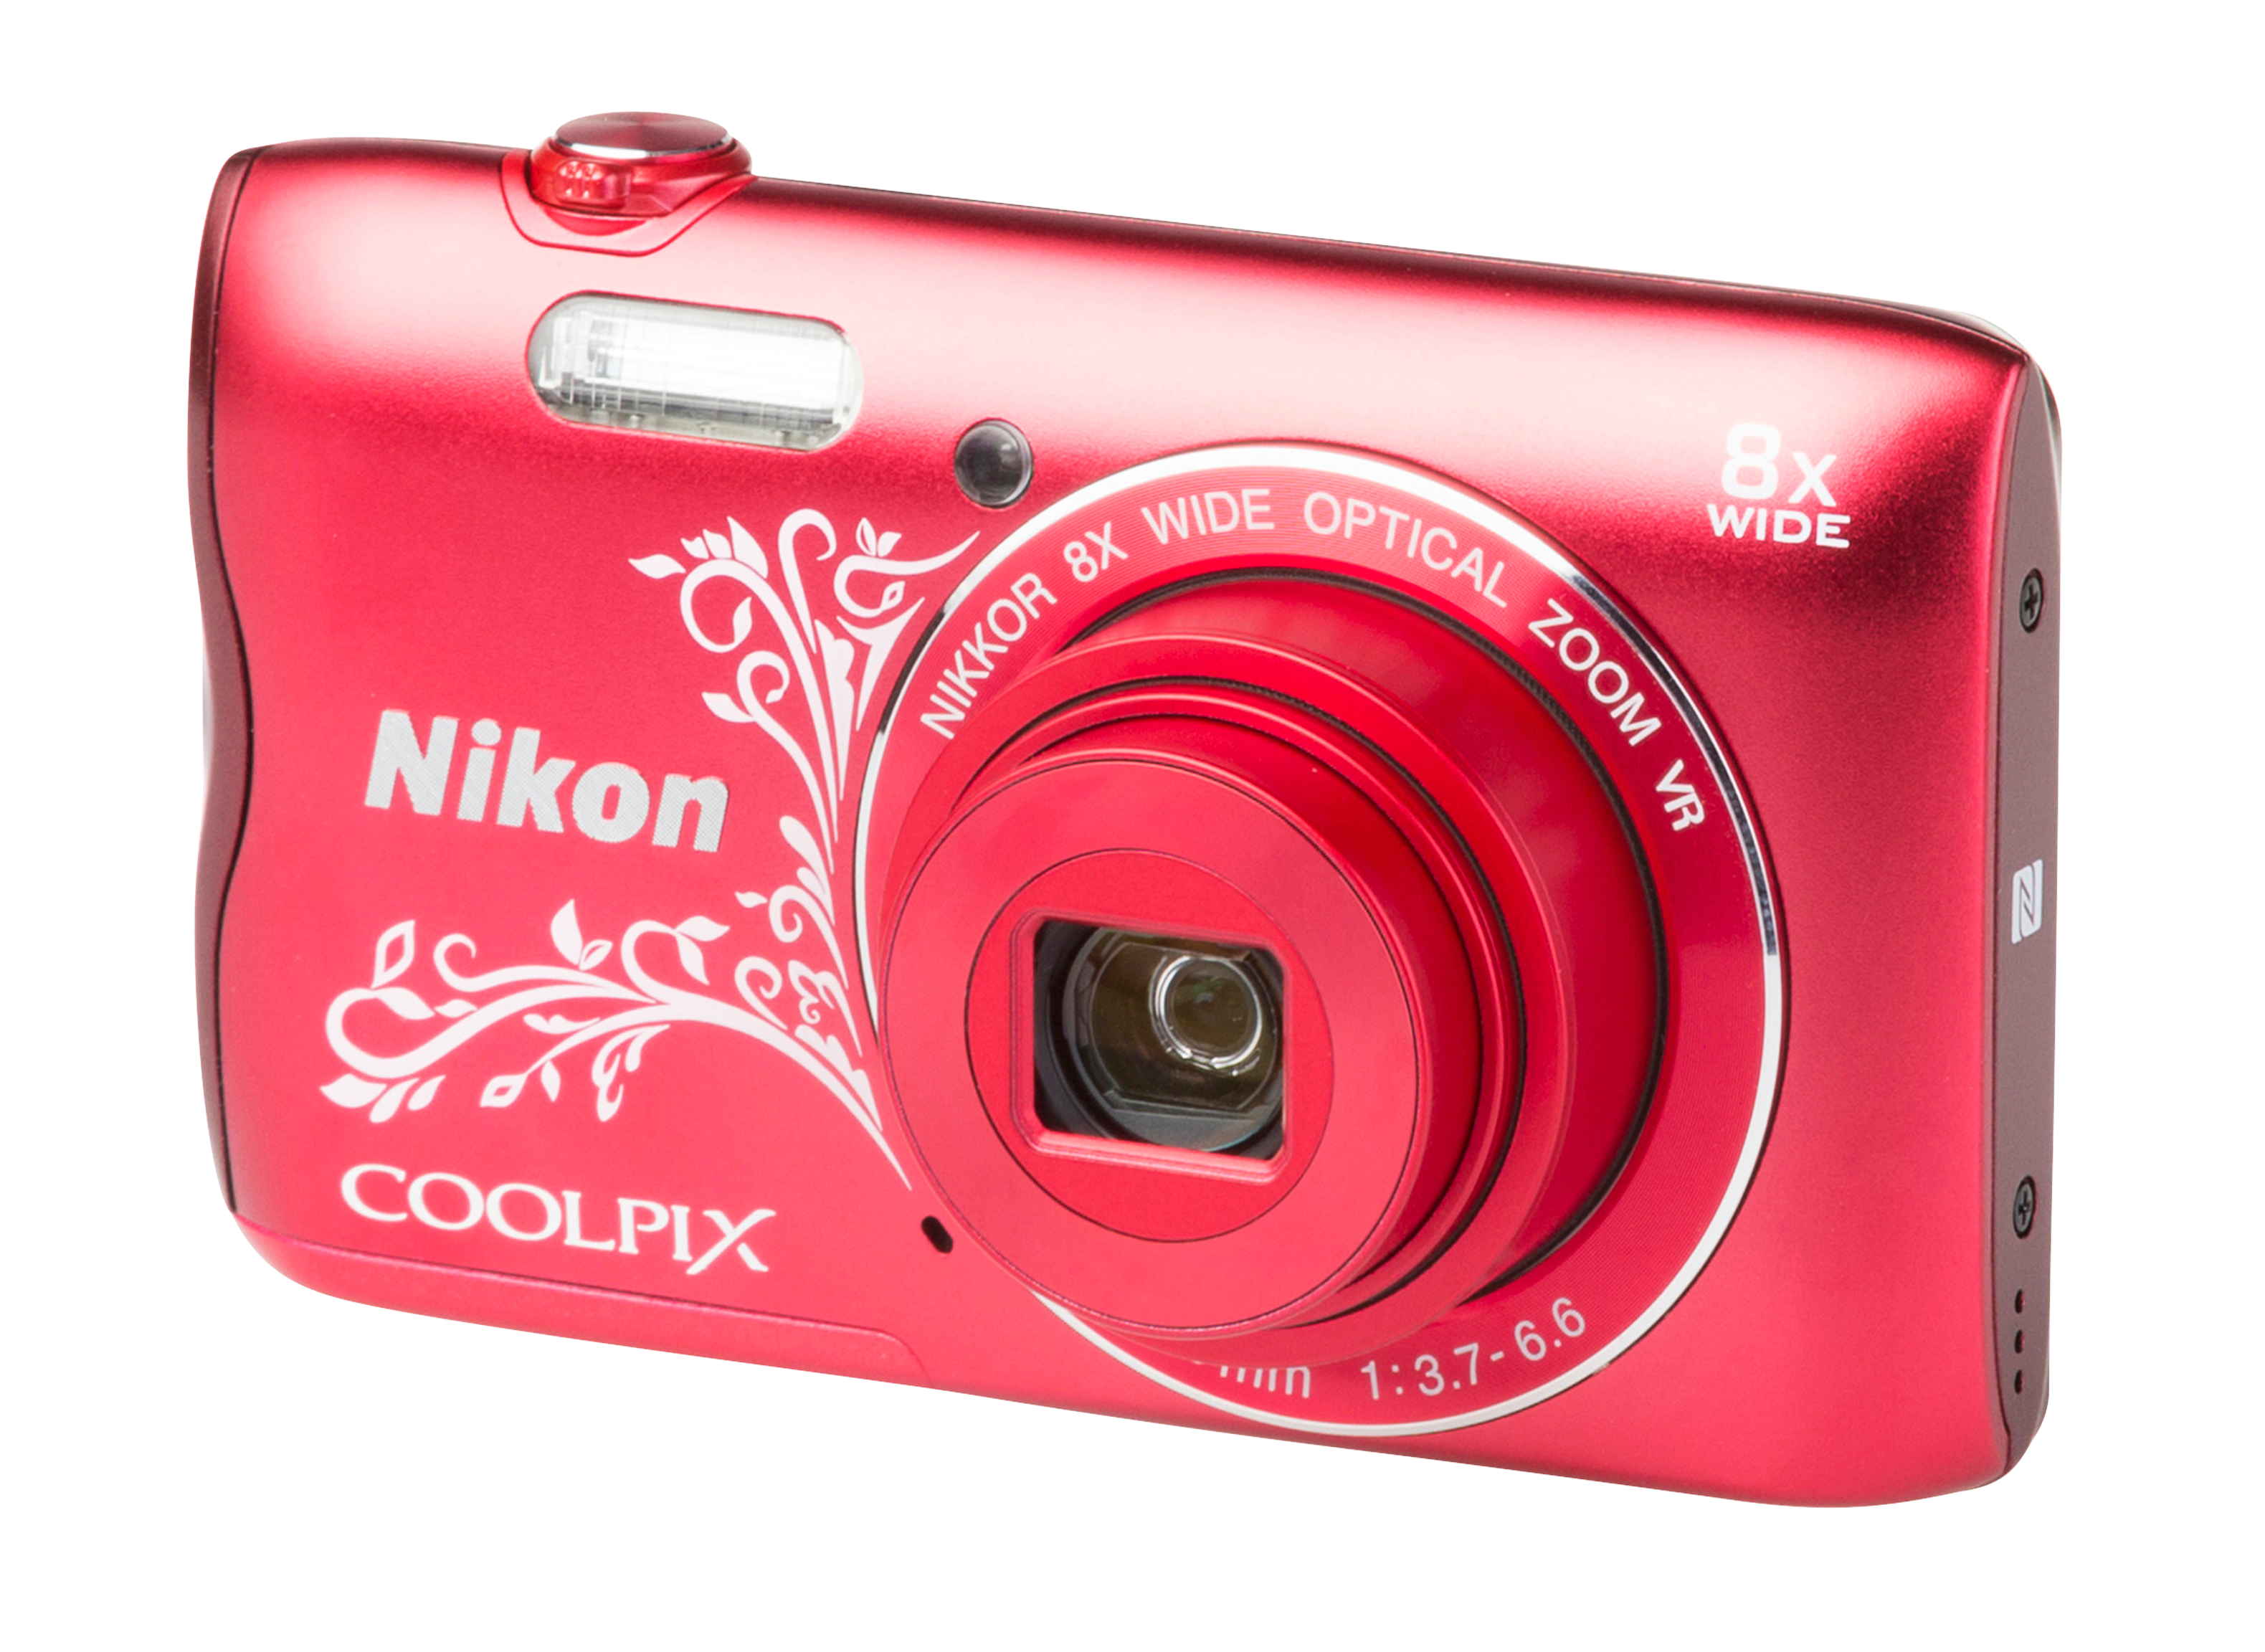 Nikon CoolPix A300 Camera Review - Consumer Reports